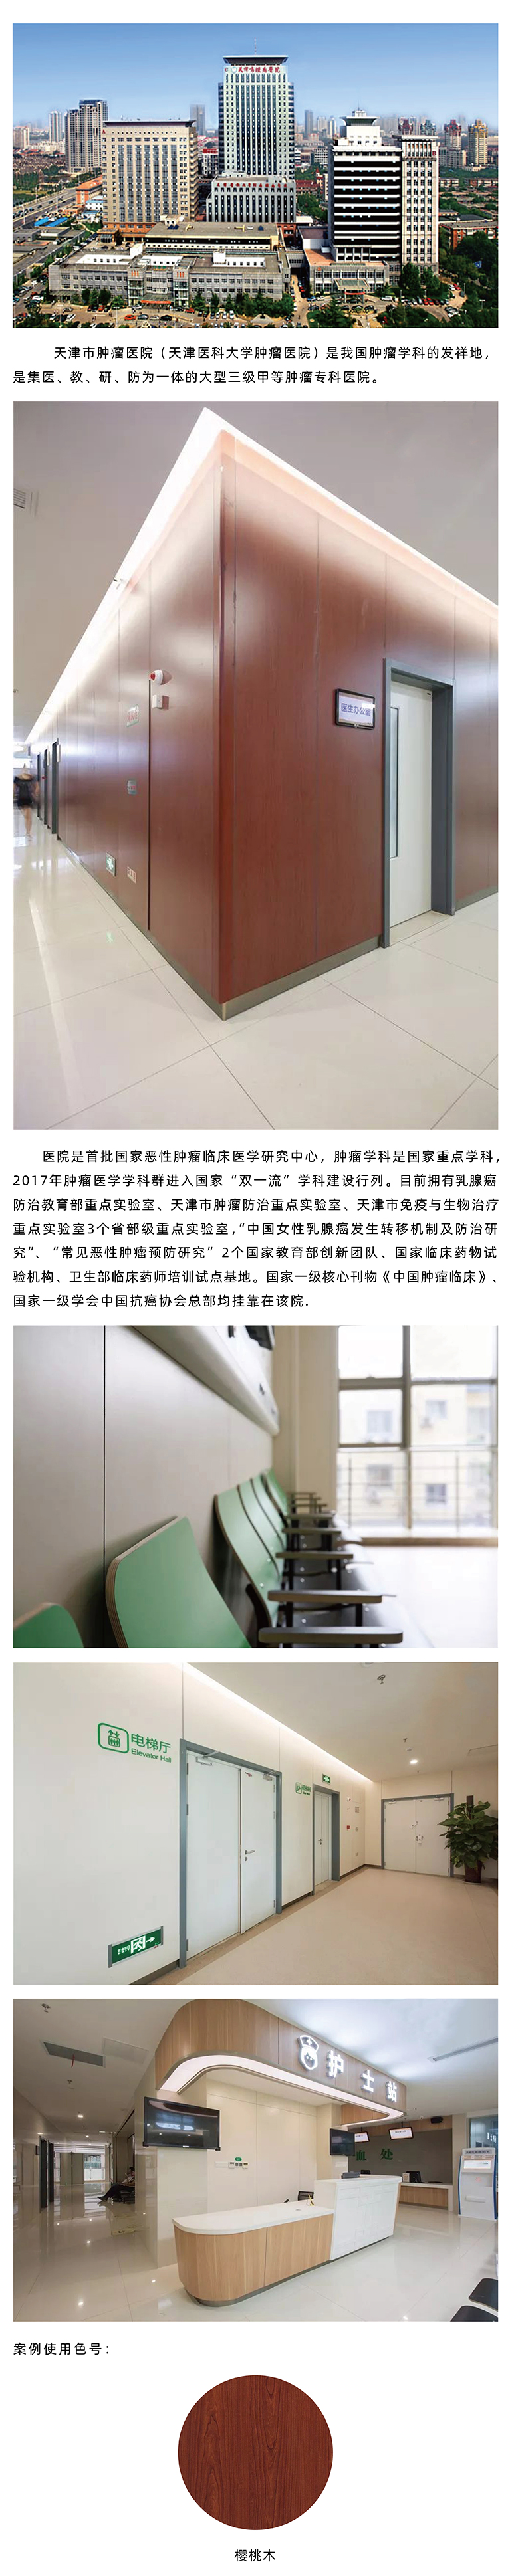 天津市肿瘤医院医疗墙板系统